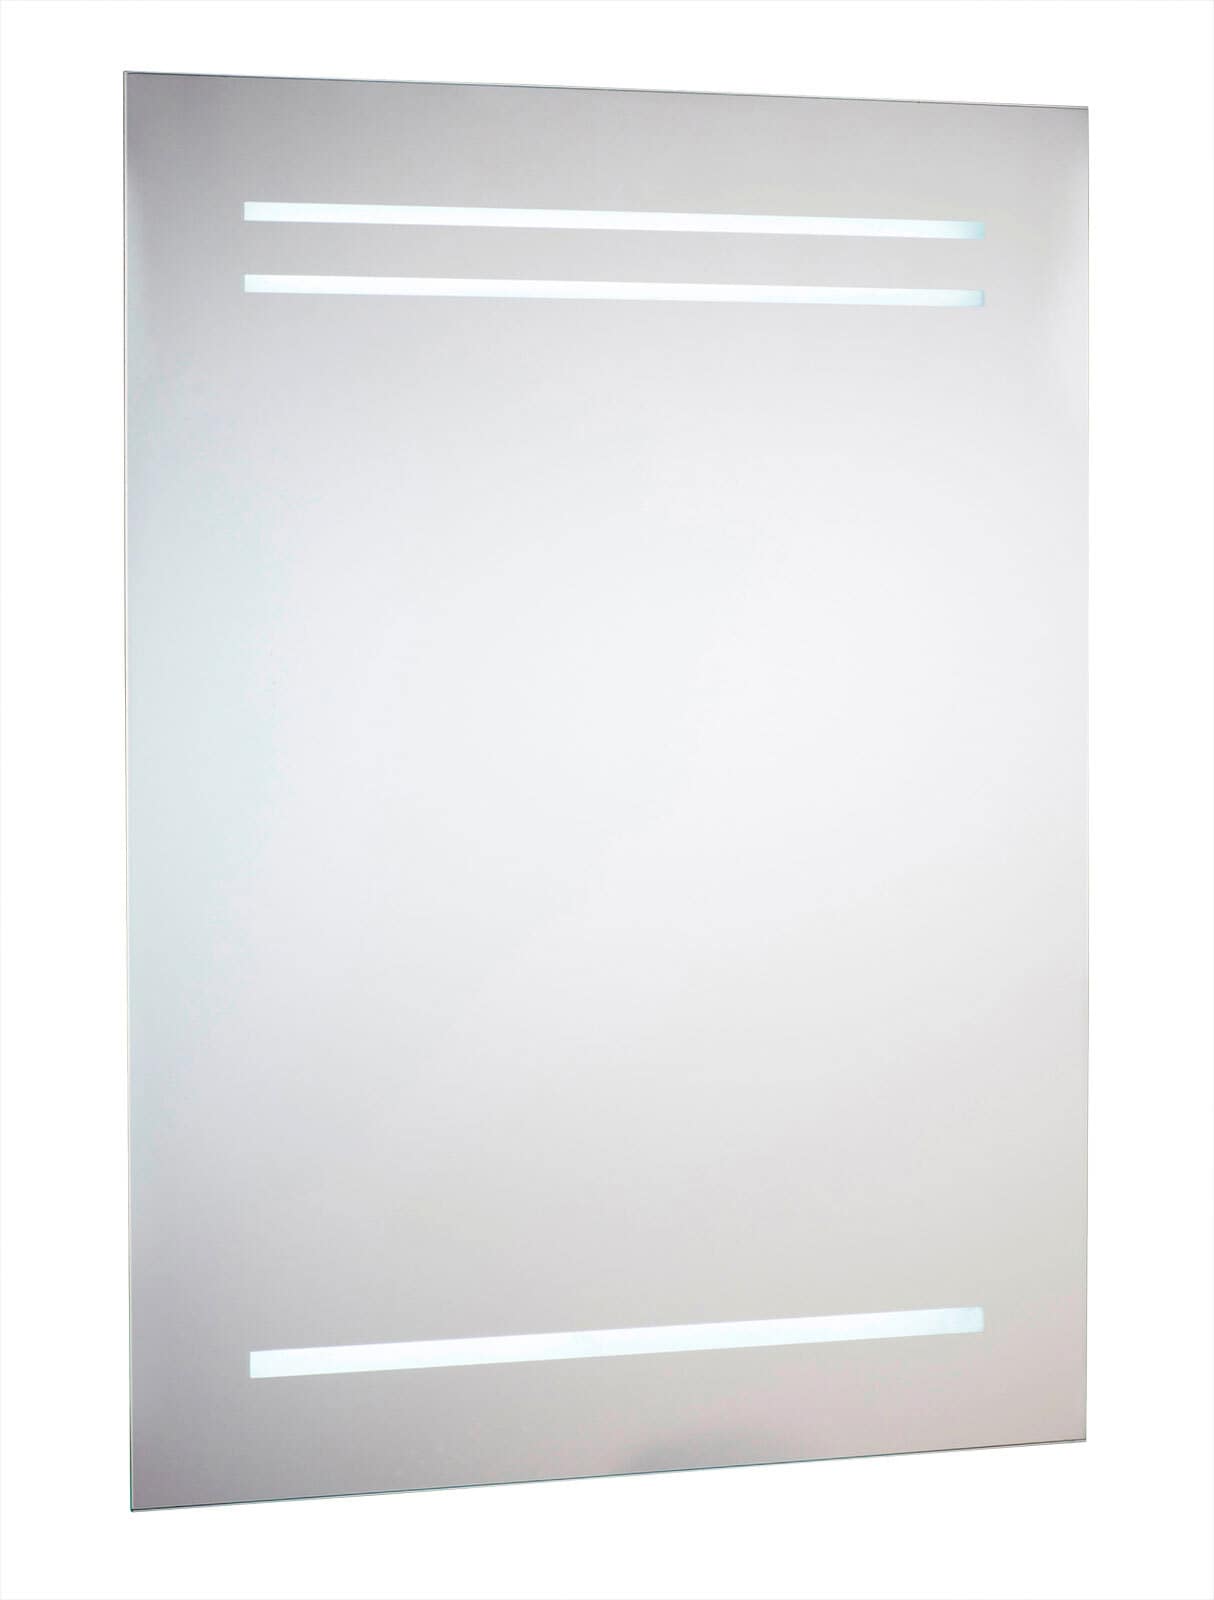 CASAVANTI Spiegel mit Beleuchtung 60 x 80 cm silberfarbig